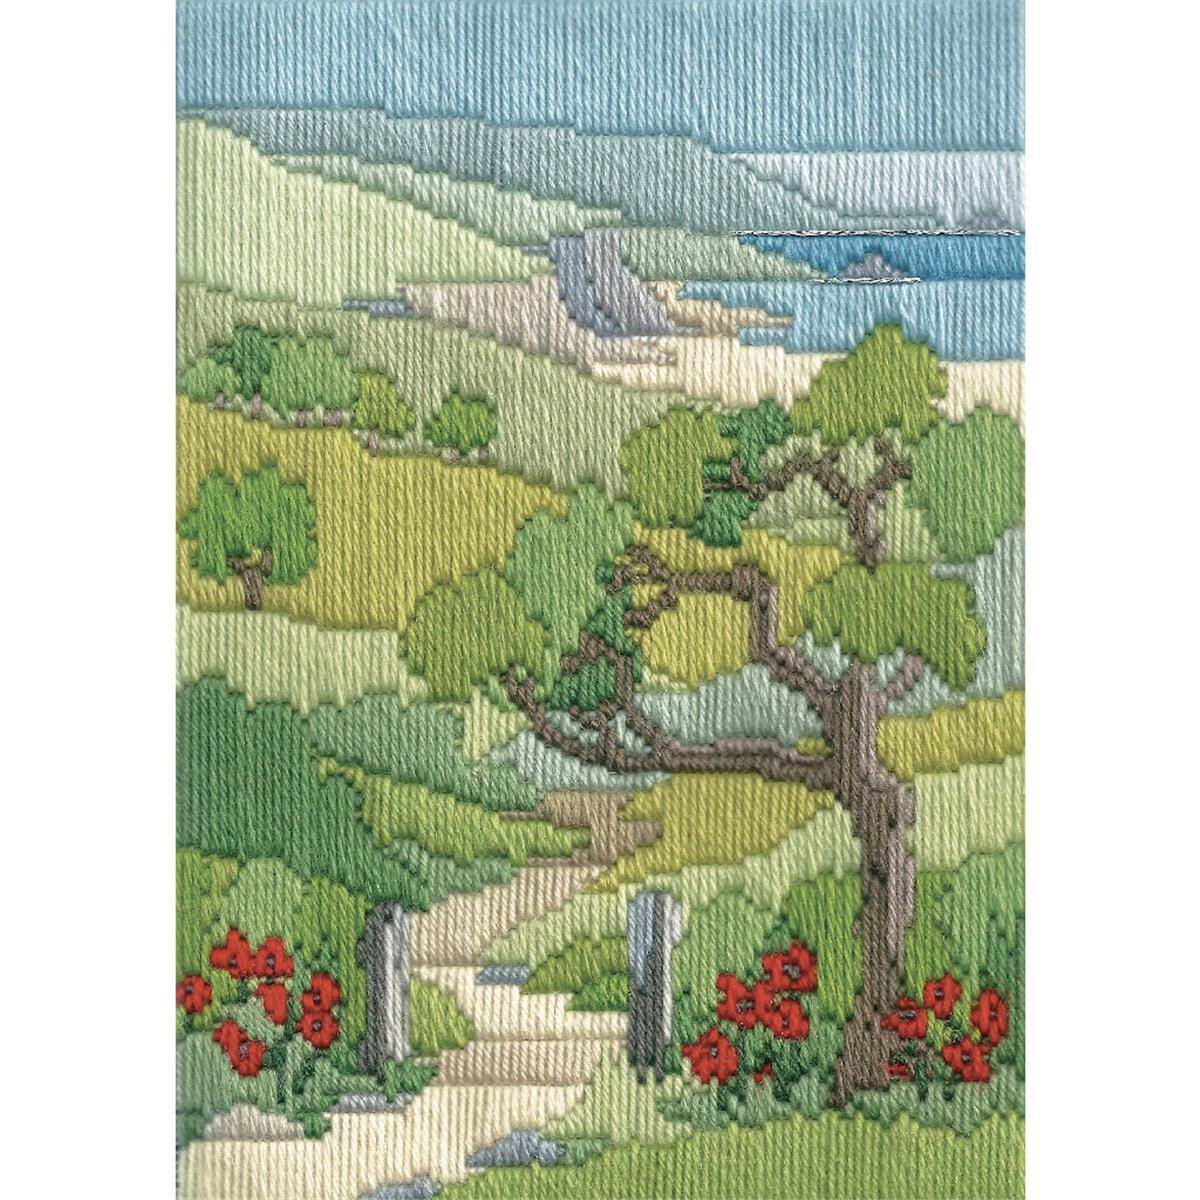 Eine farbenfrohe Landschafts-Stickpackung von Bothy...